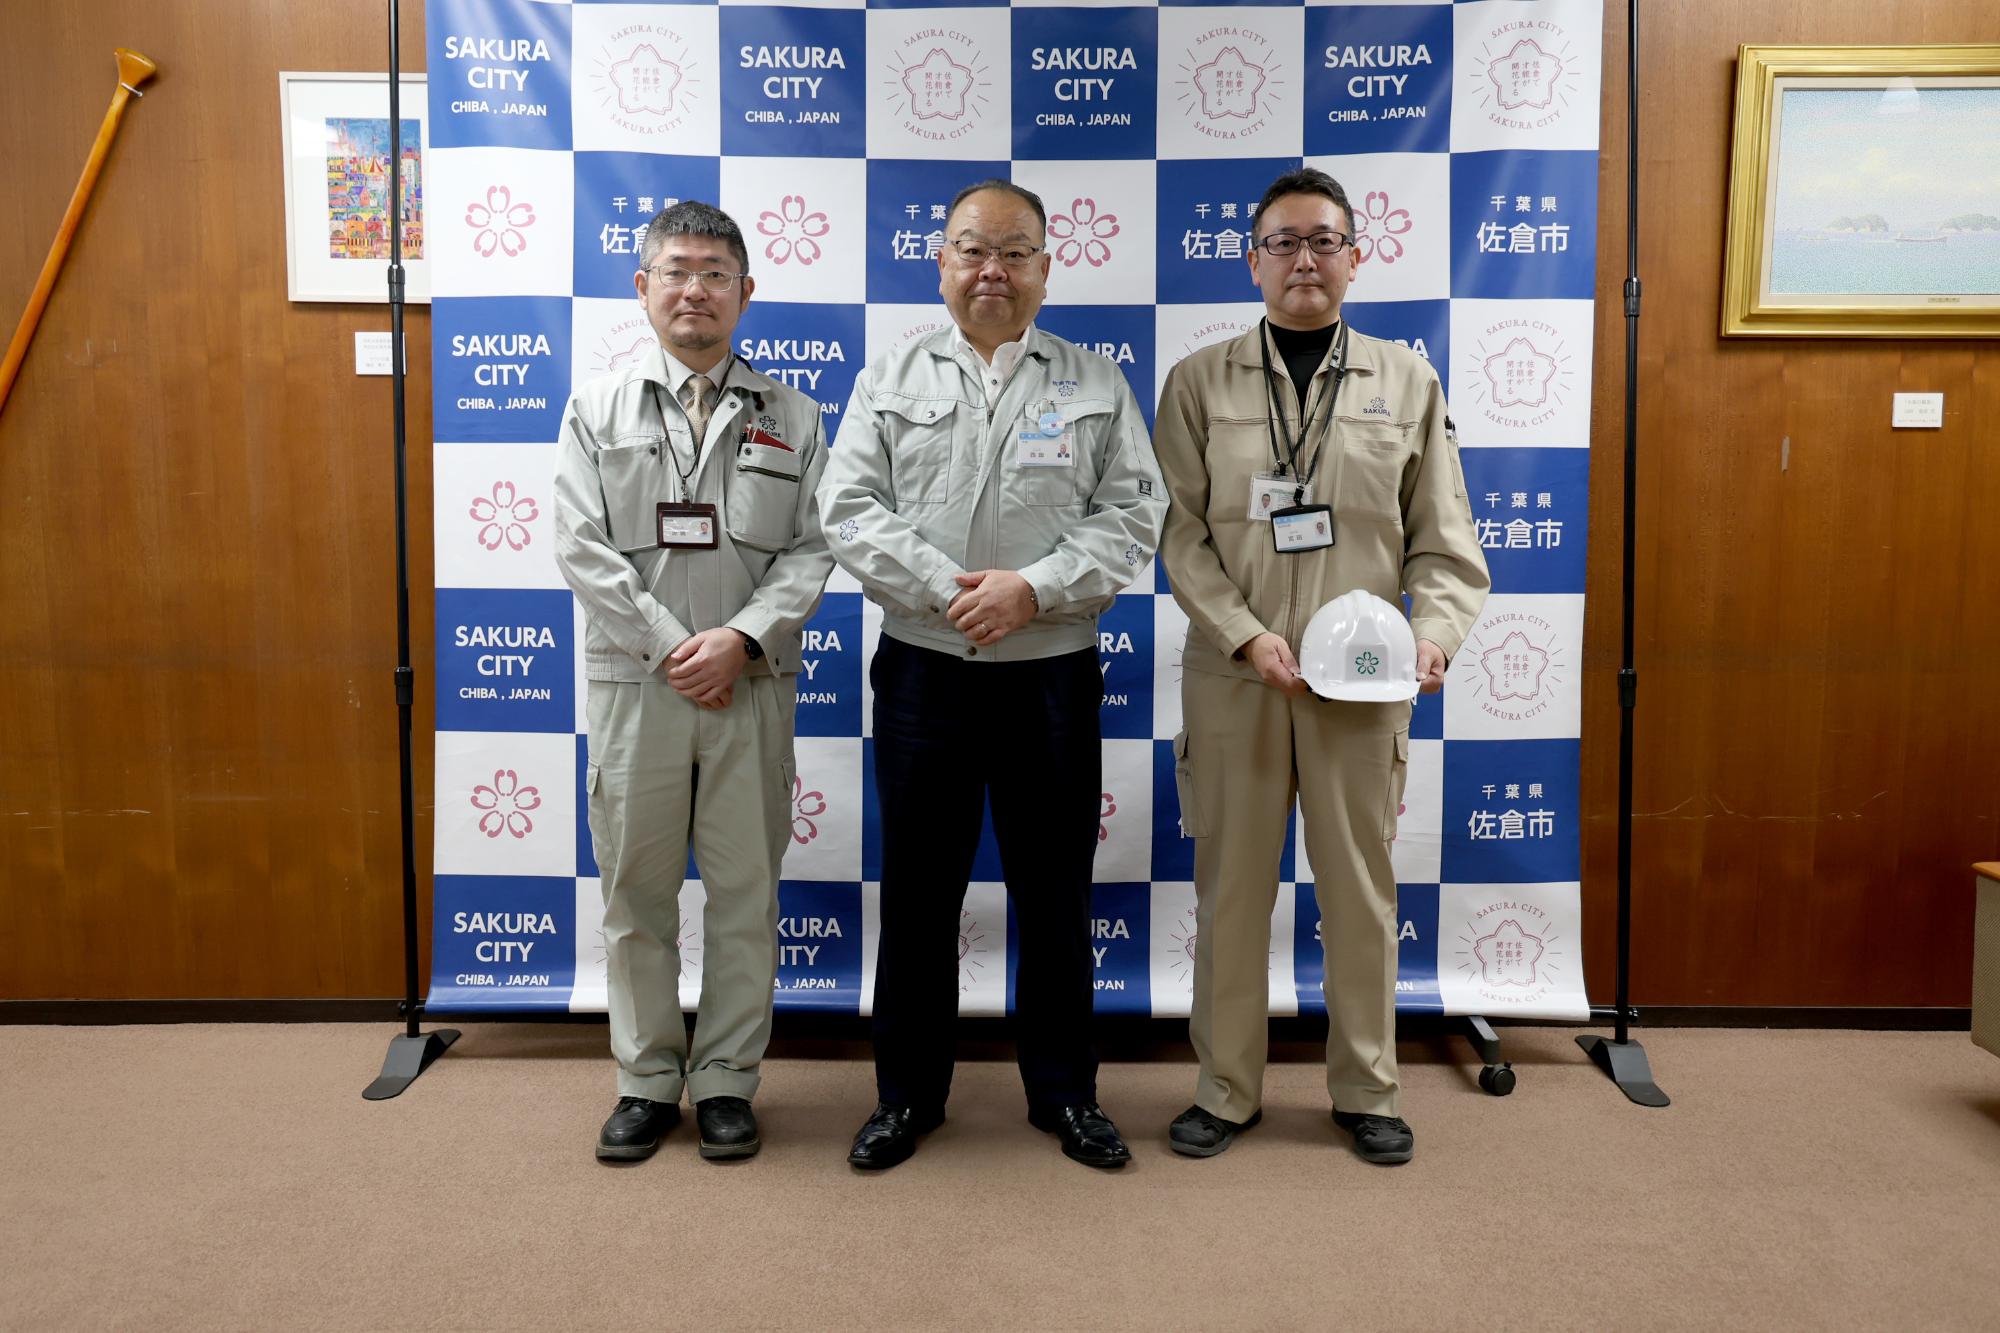 能登半島地震により派遣される職員2名と佐倉市長の写真